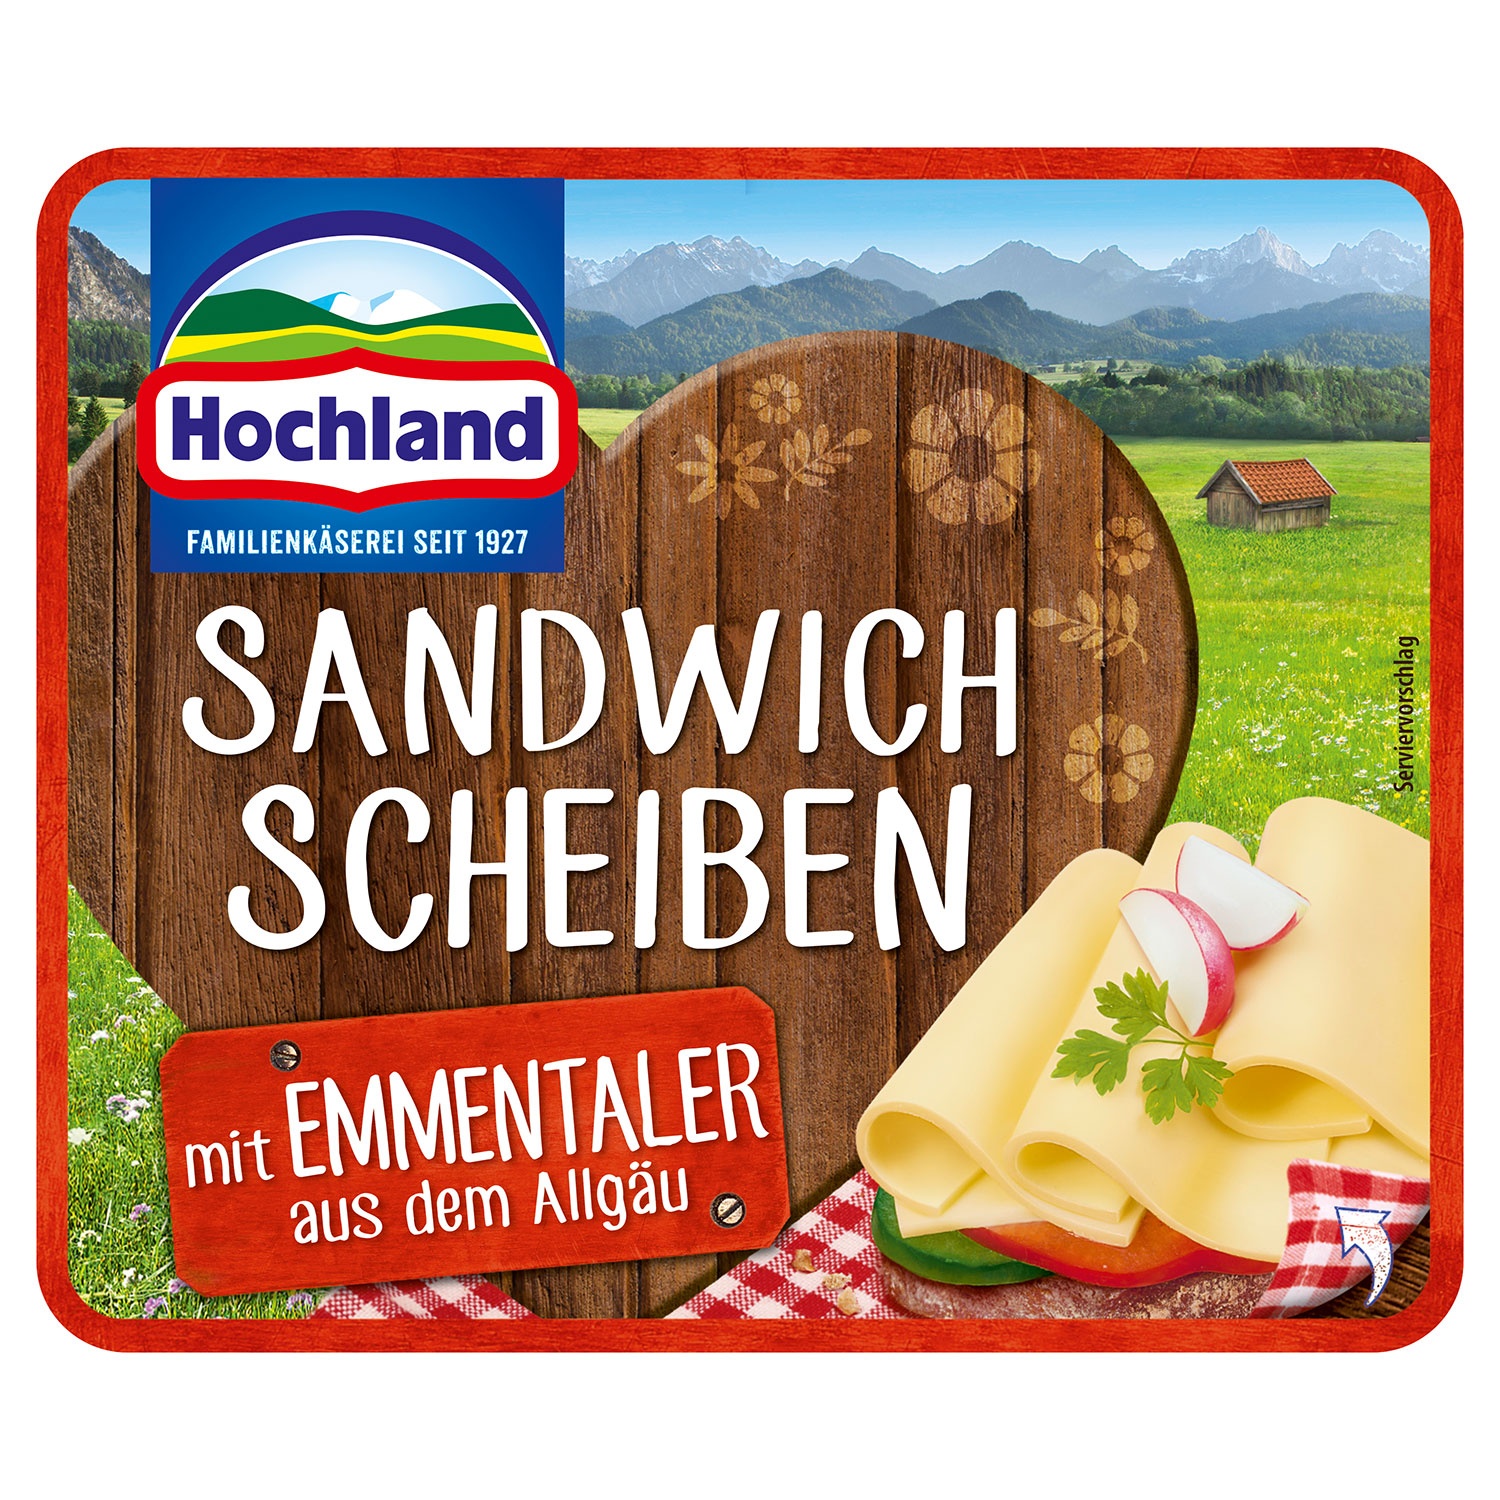 HOCHLAND Sandwich-Scheiben 150 g